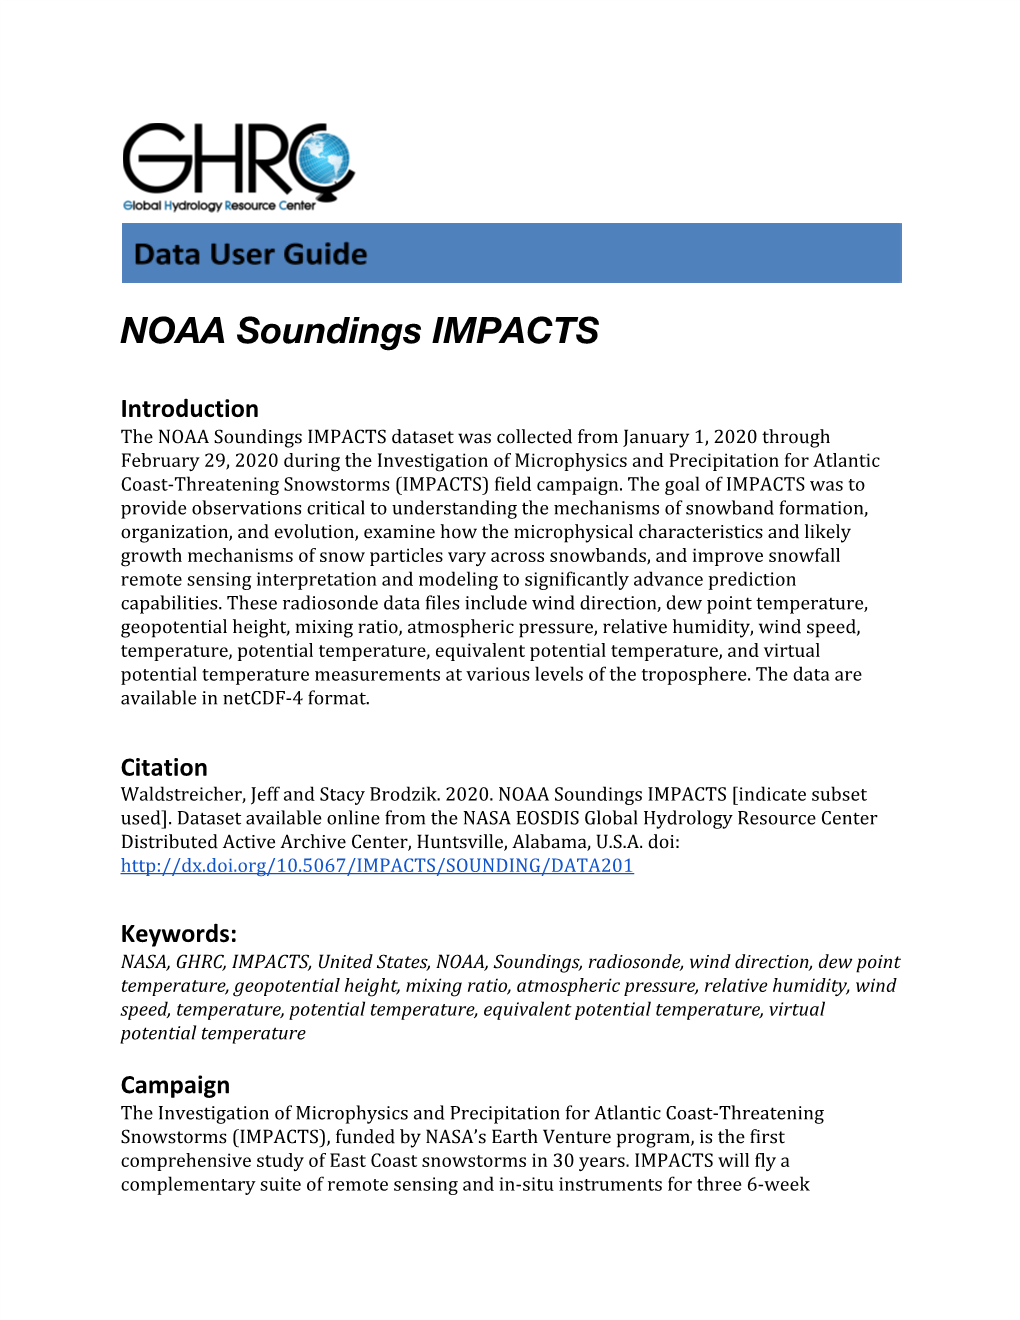 NOAA Soundings IMPACTS